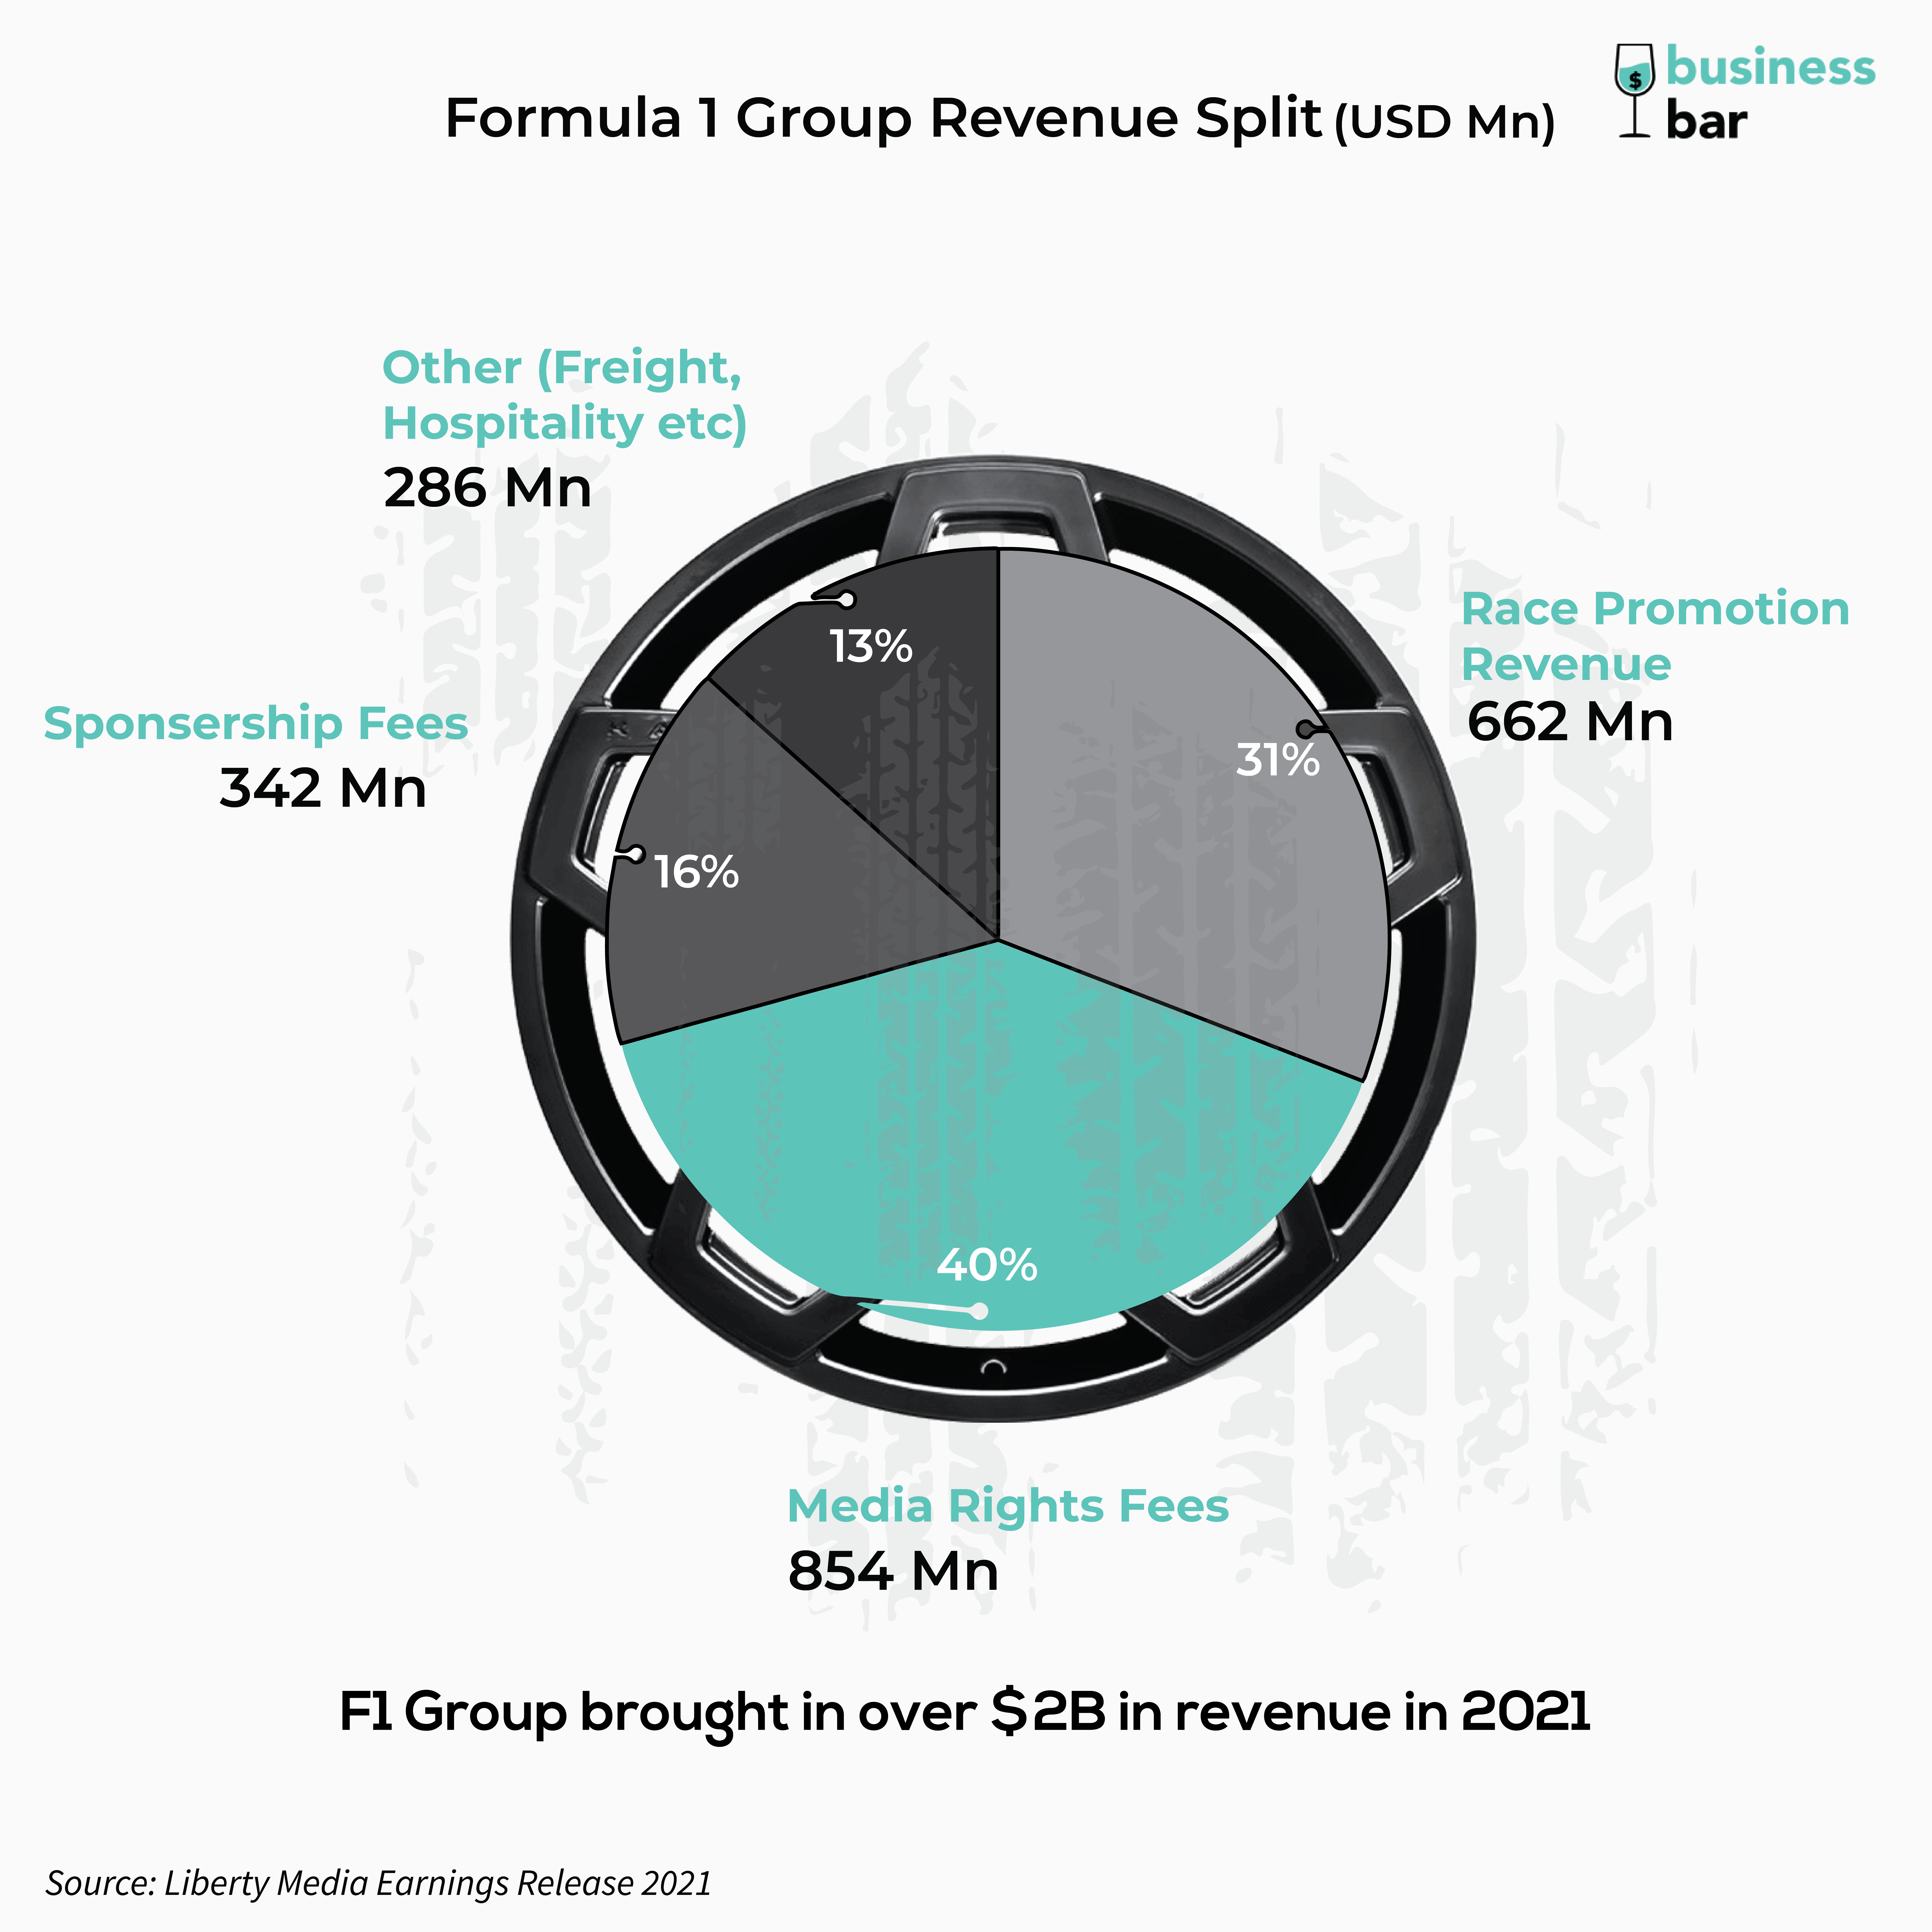 Formula One Group Revenue